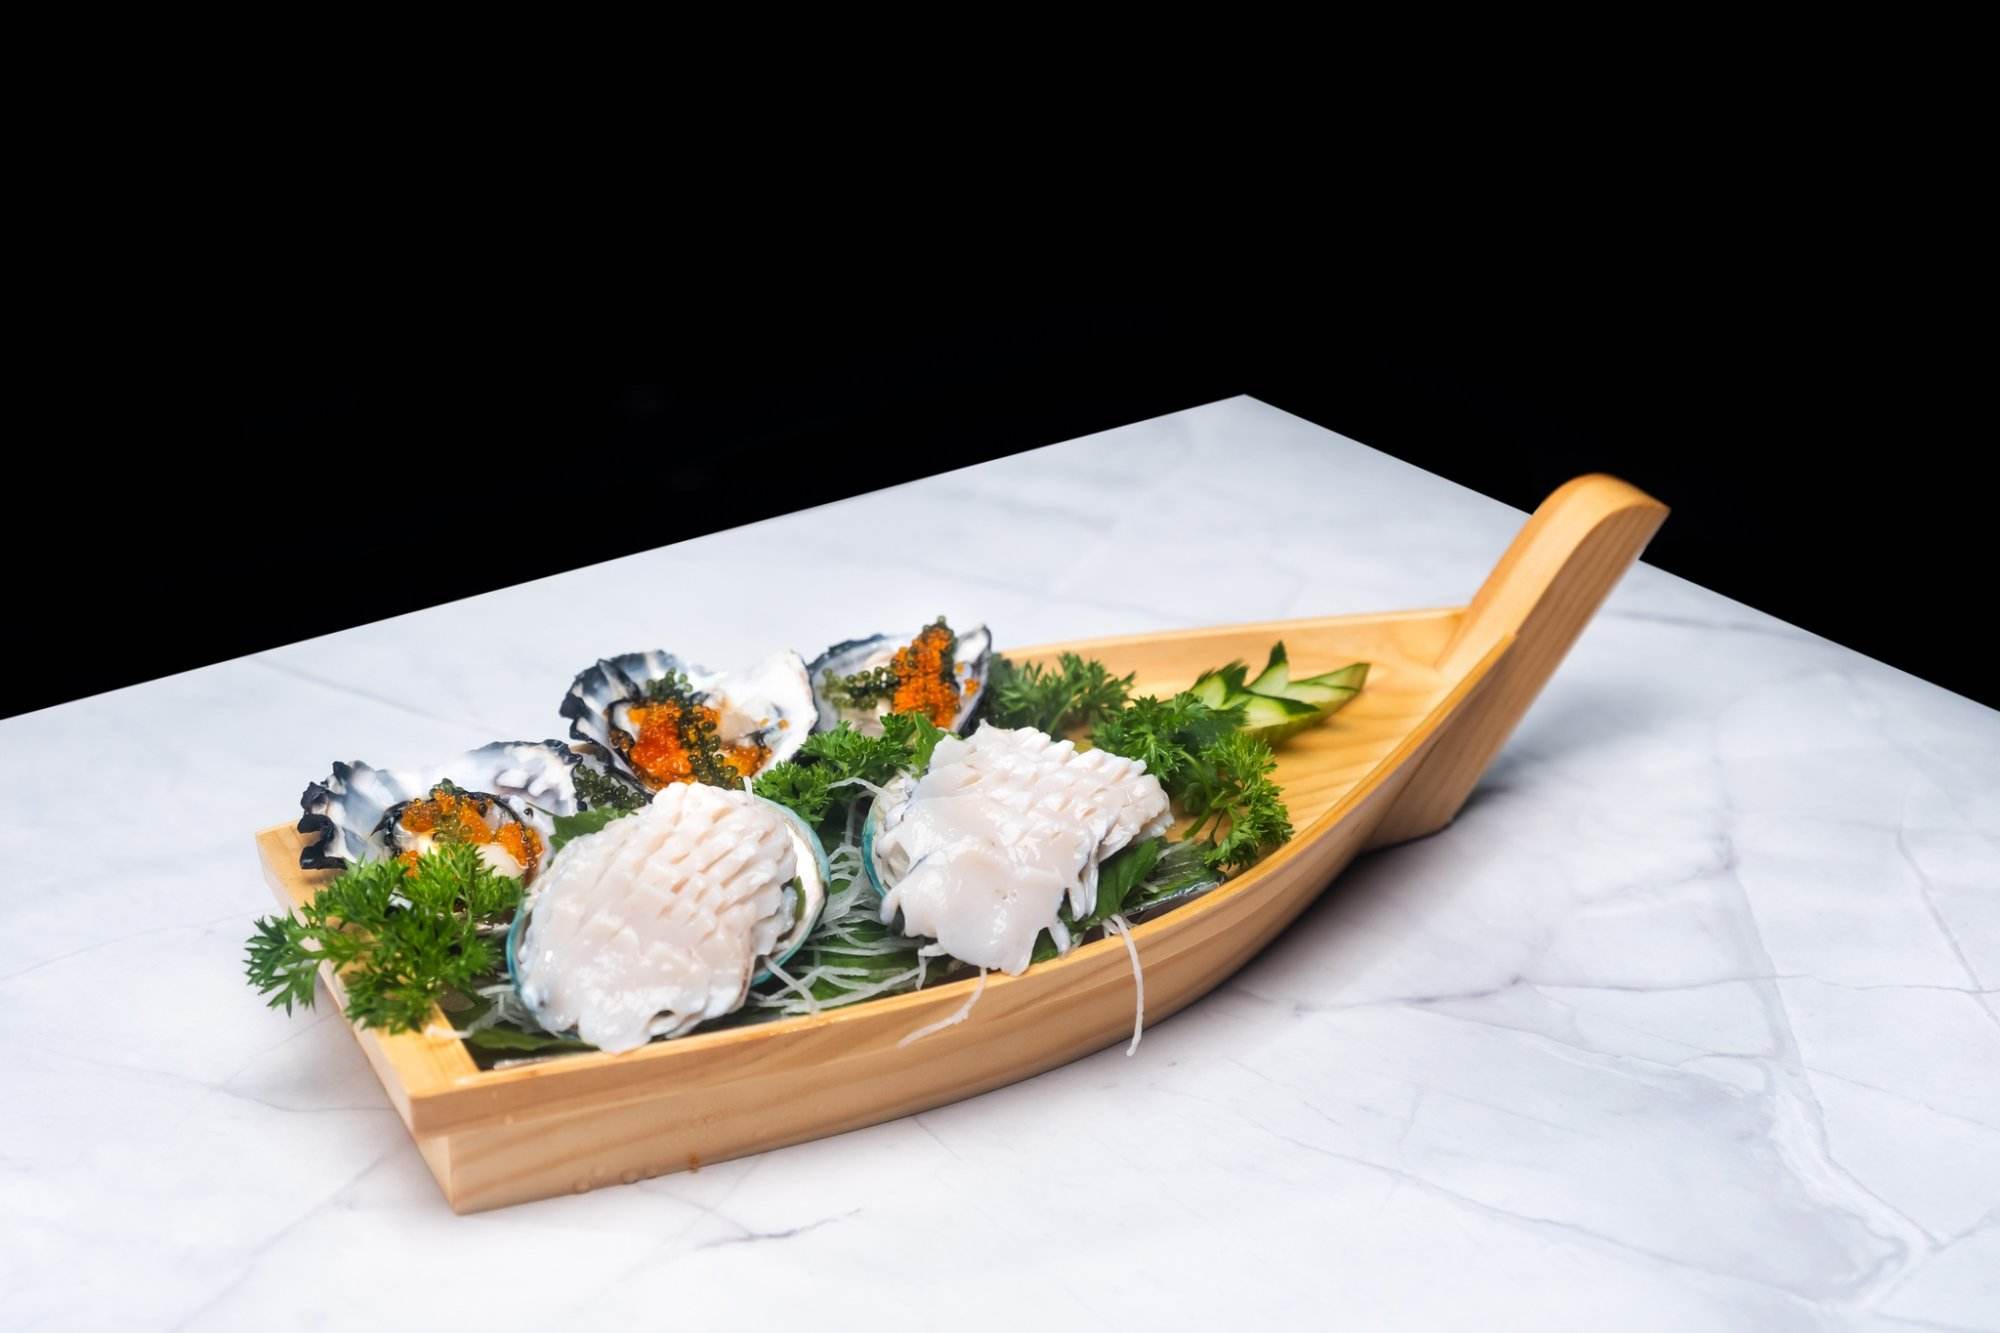 Bào ngư ngọc bích Australia, món ngon thần dược trong ẩm thực hải sản từ đại dương - ảnh 4